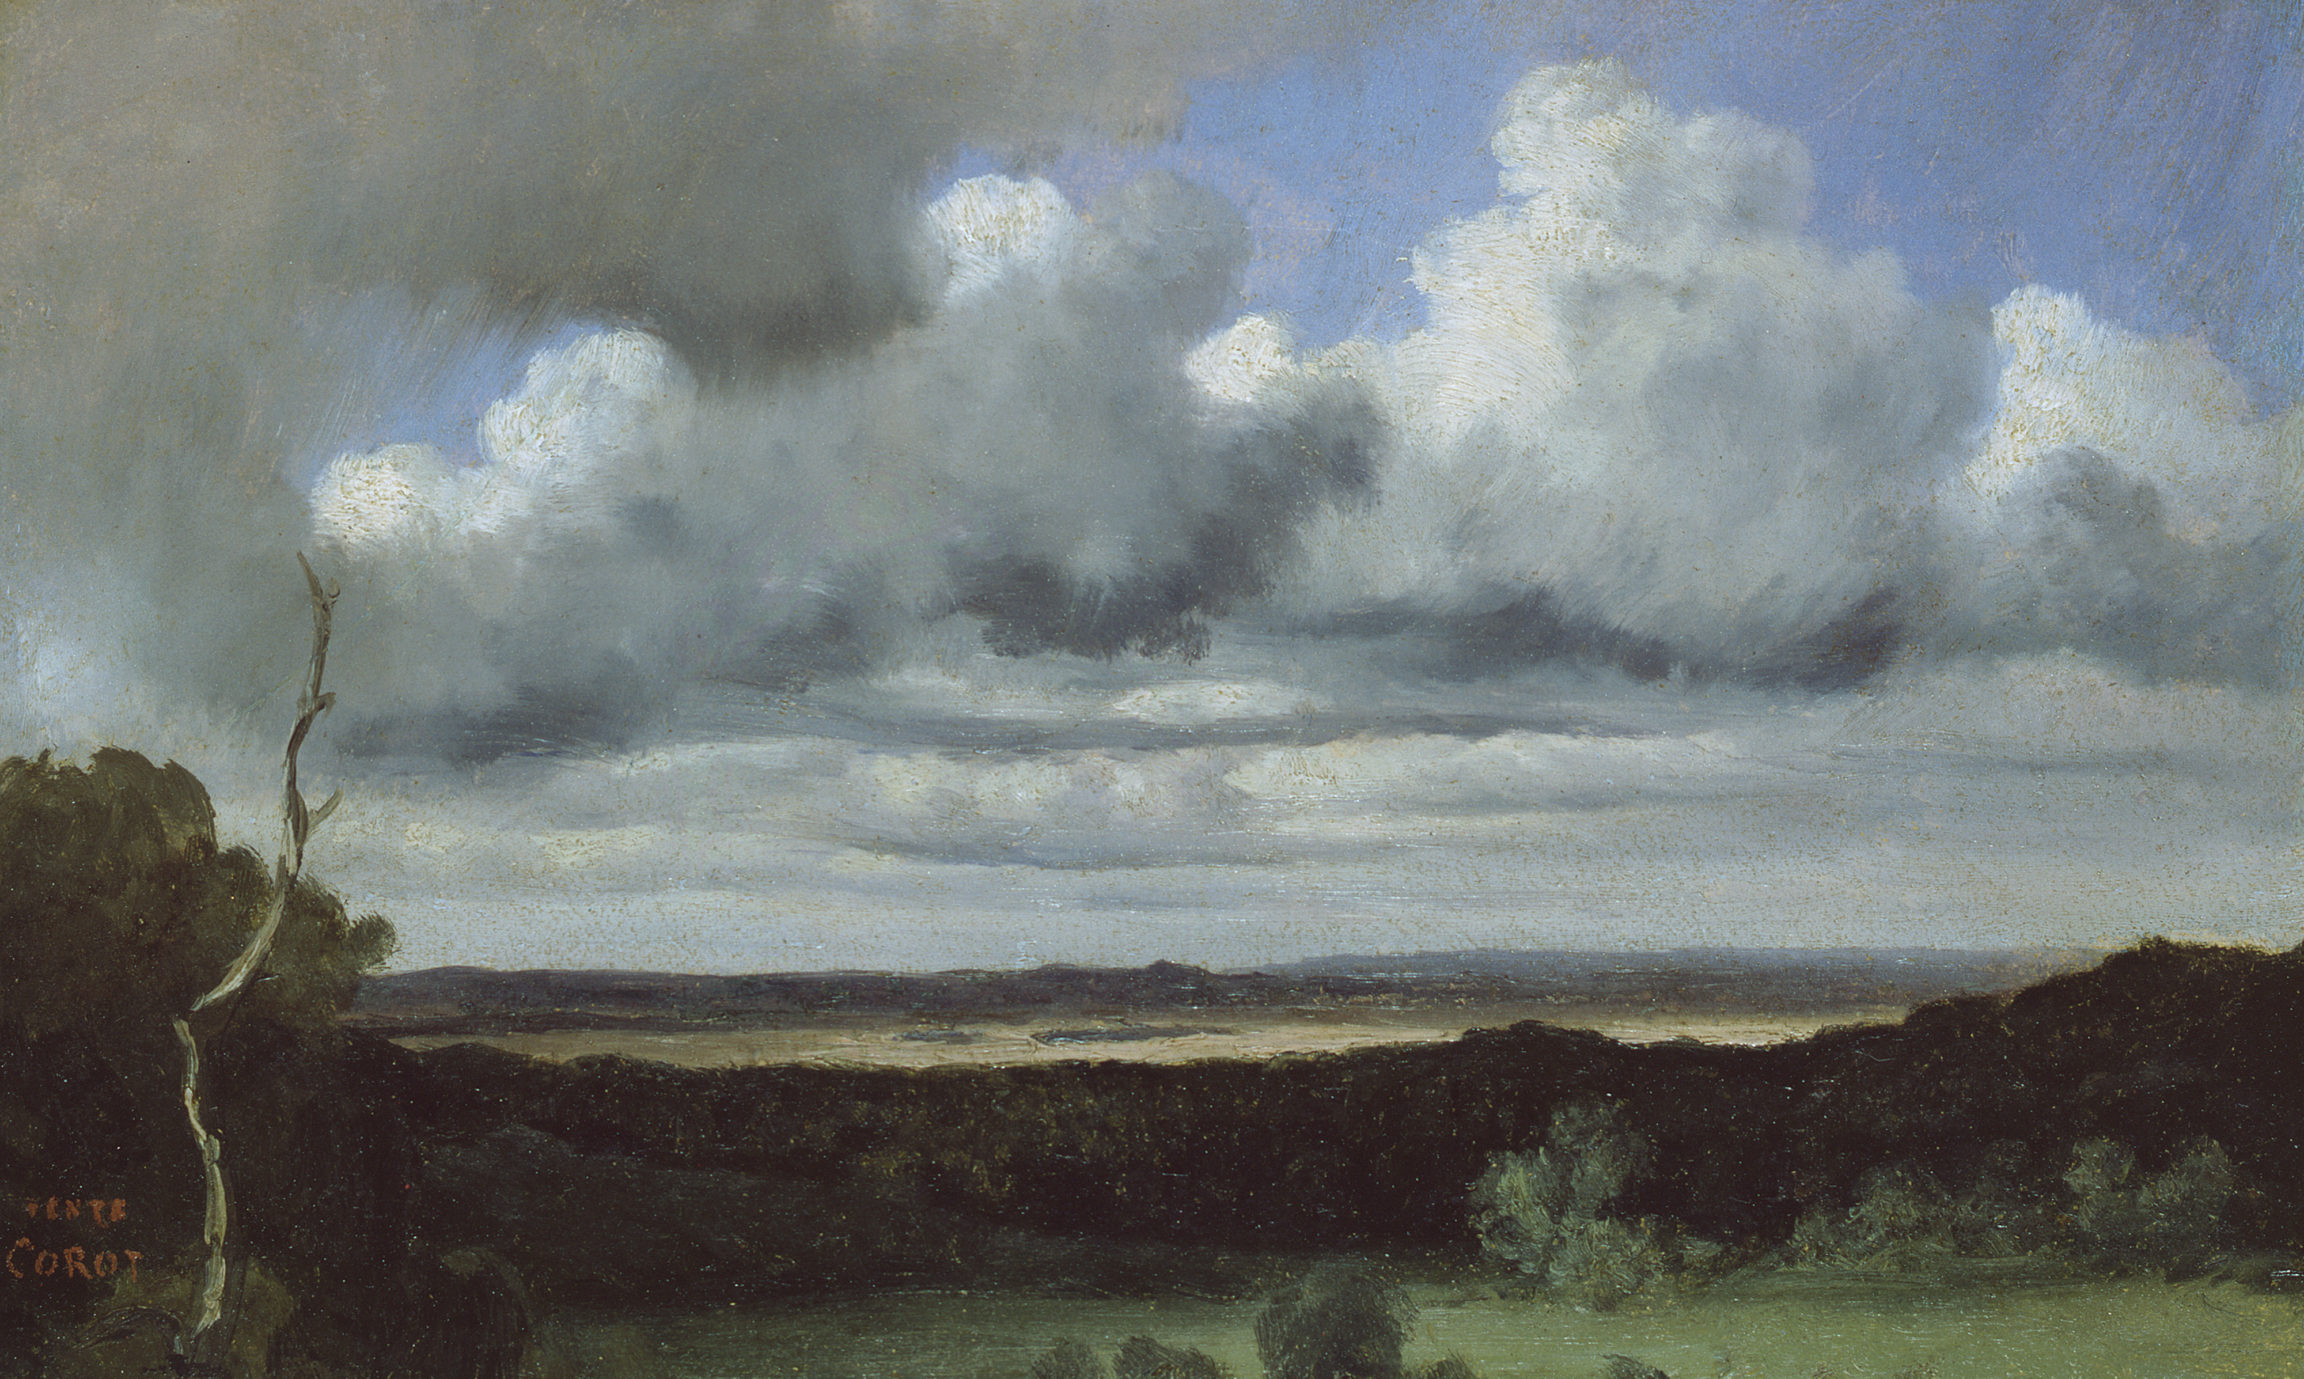 Jean-Baptiste Camille Corot, Fontainebleau – Orage sur les plaines (Fontainebleau – Storm over the Plains), 1822